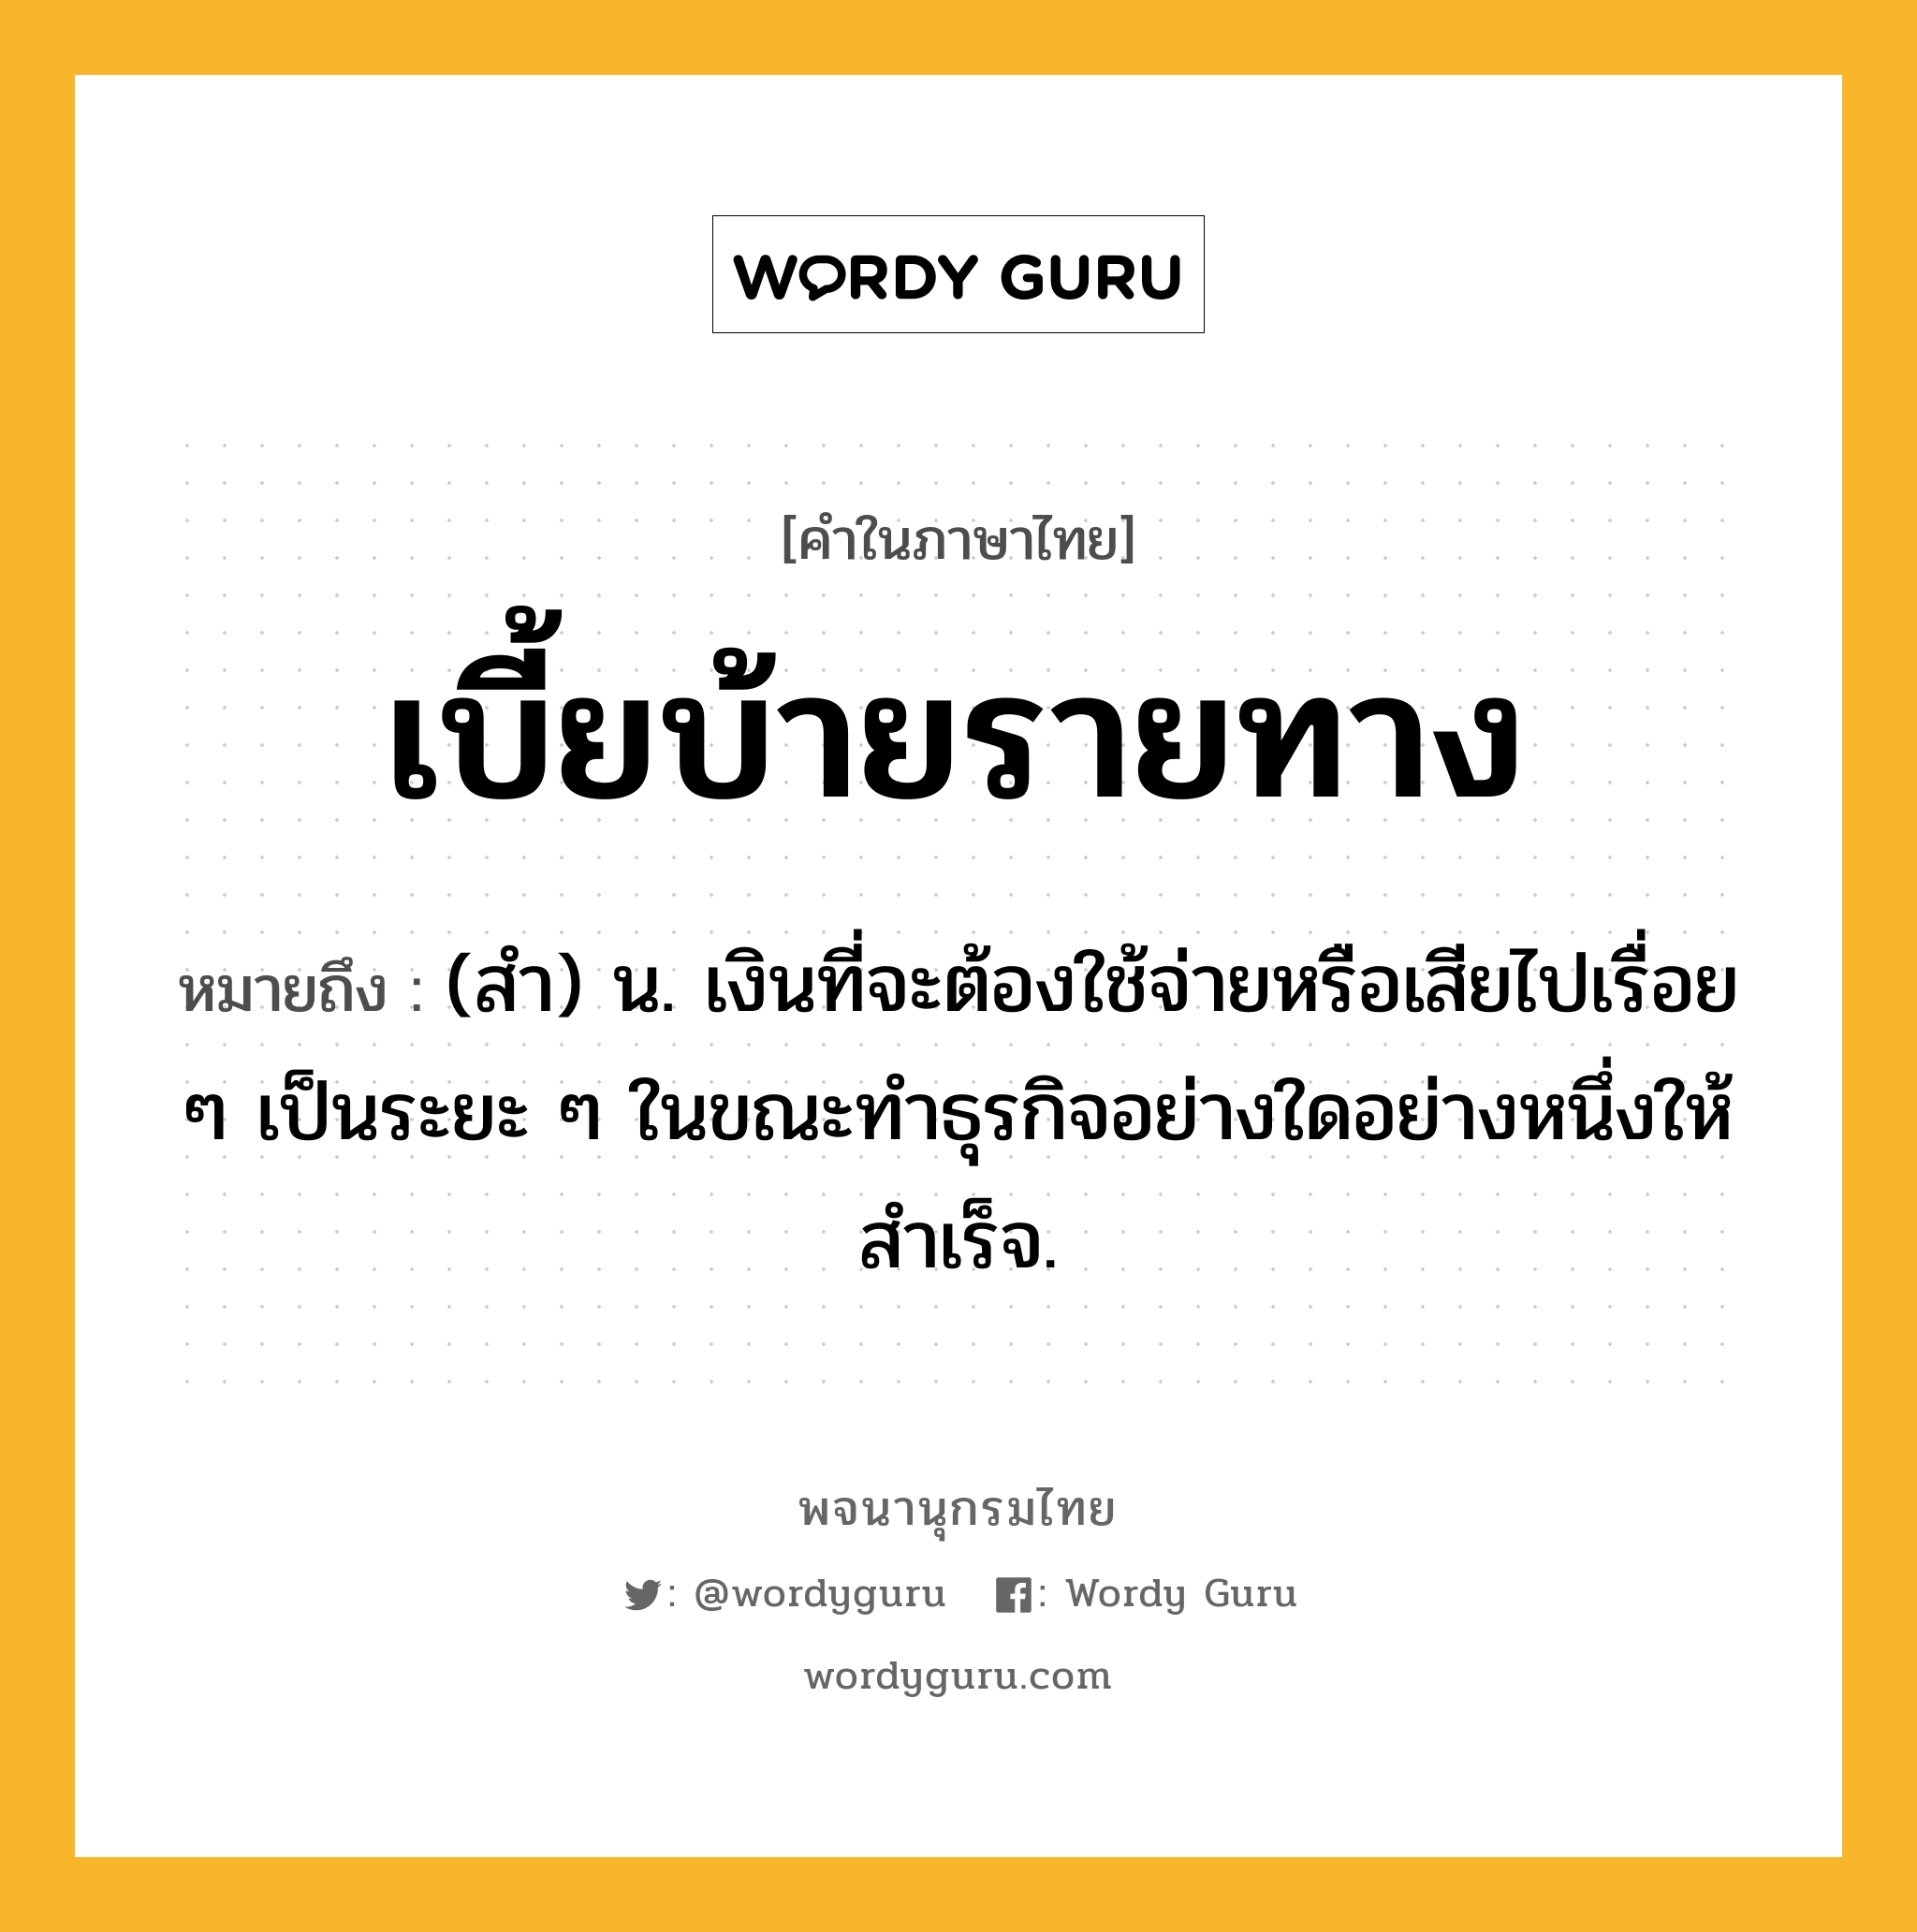 เบี้ยบ้ายรายทาง หมายถึงอะไร?, คำในภาษาไทย เบี้ยบ้ายรายทาง หมายถึง (สํา) น. เงินที่จะต้องใช้จ่ายหรือเสียไปเรื่อย ๆ เป็นระยะ ๆ ในขณะทําธุรกิจอย่างใดอย่างหนึ่งให้สําเร็จ.